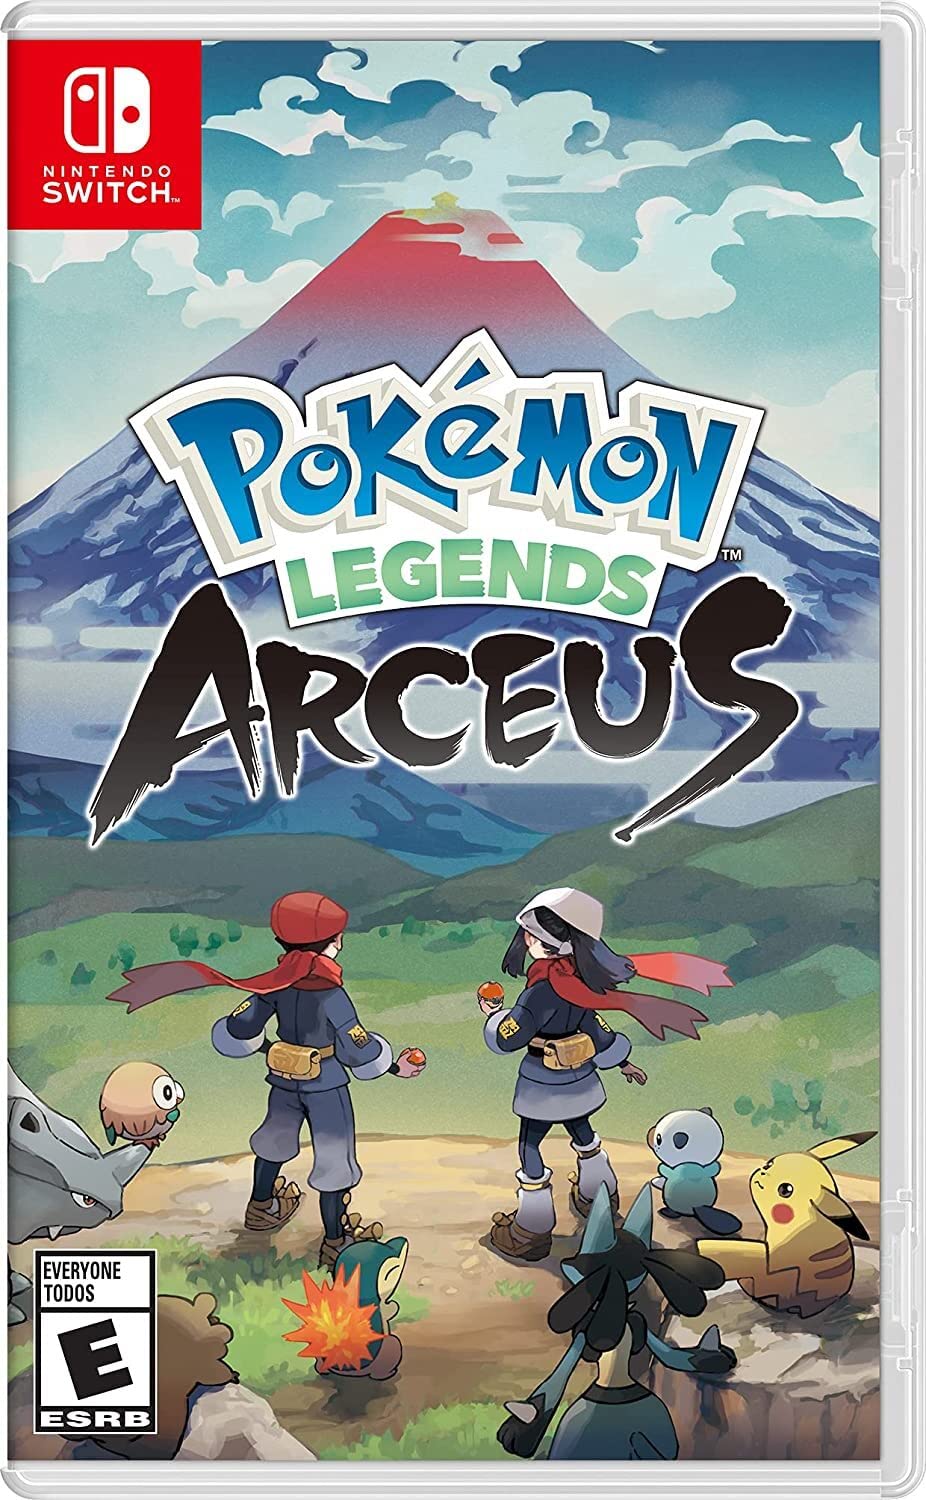 Pokémon Legends Arceus for Nintendo Switch.